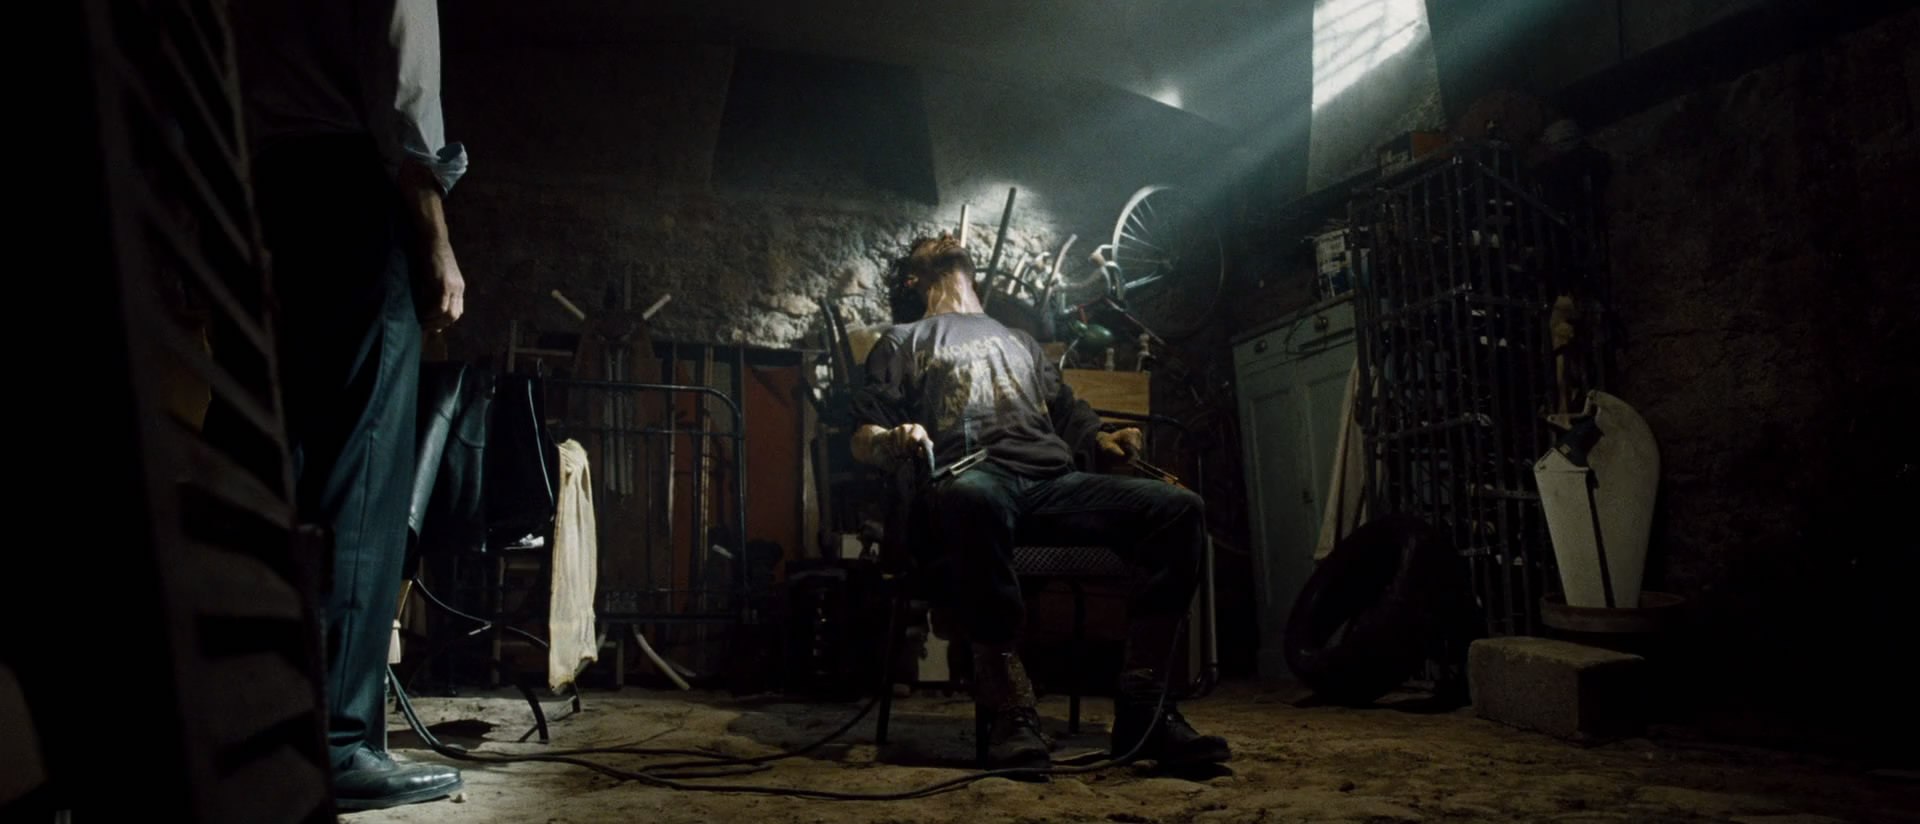 Видео где мужчина связывает мужчину. Человек привязан к стулу. Привязанный к стулу мужчина.